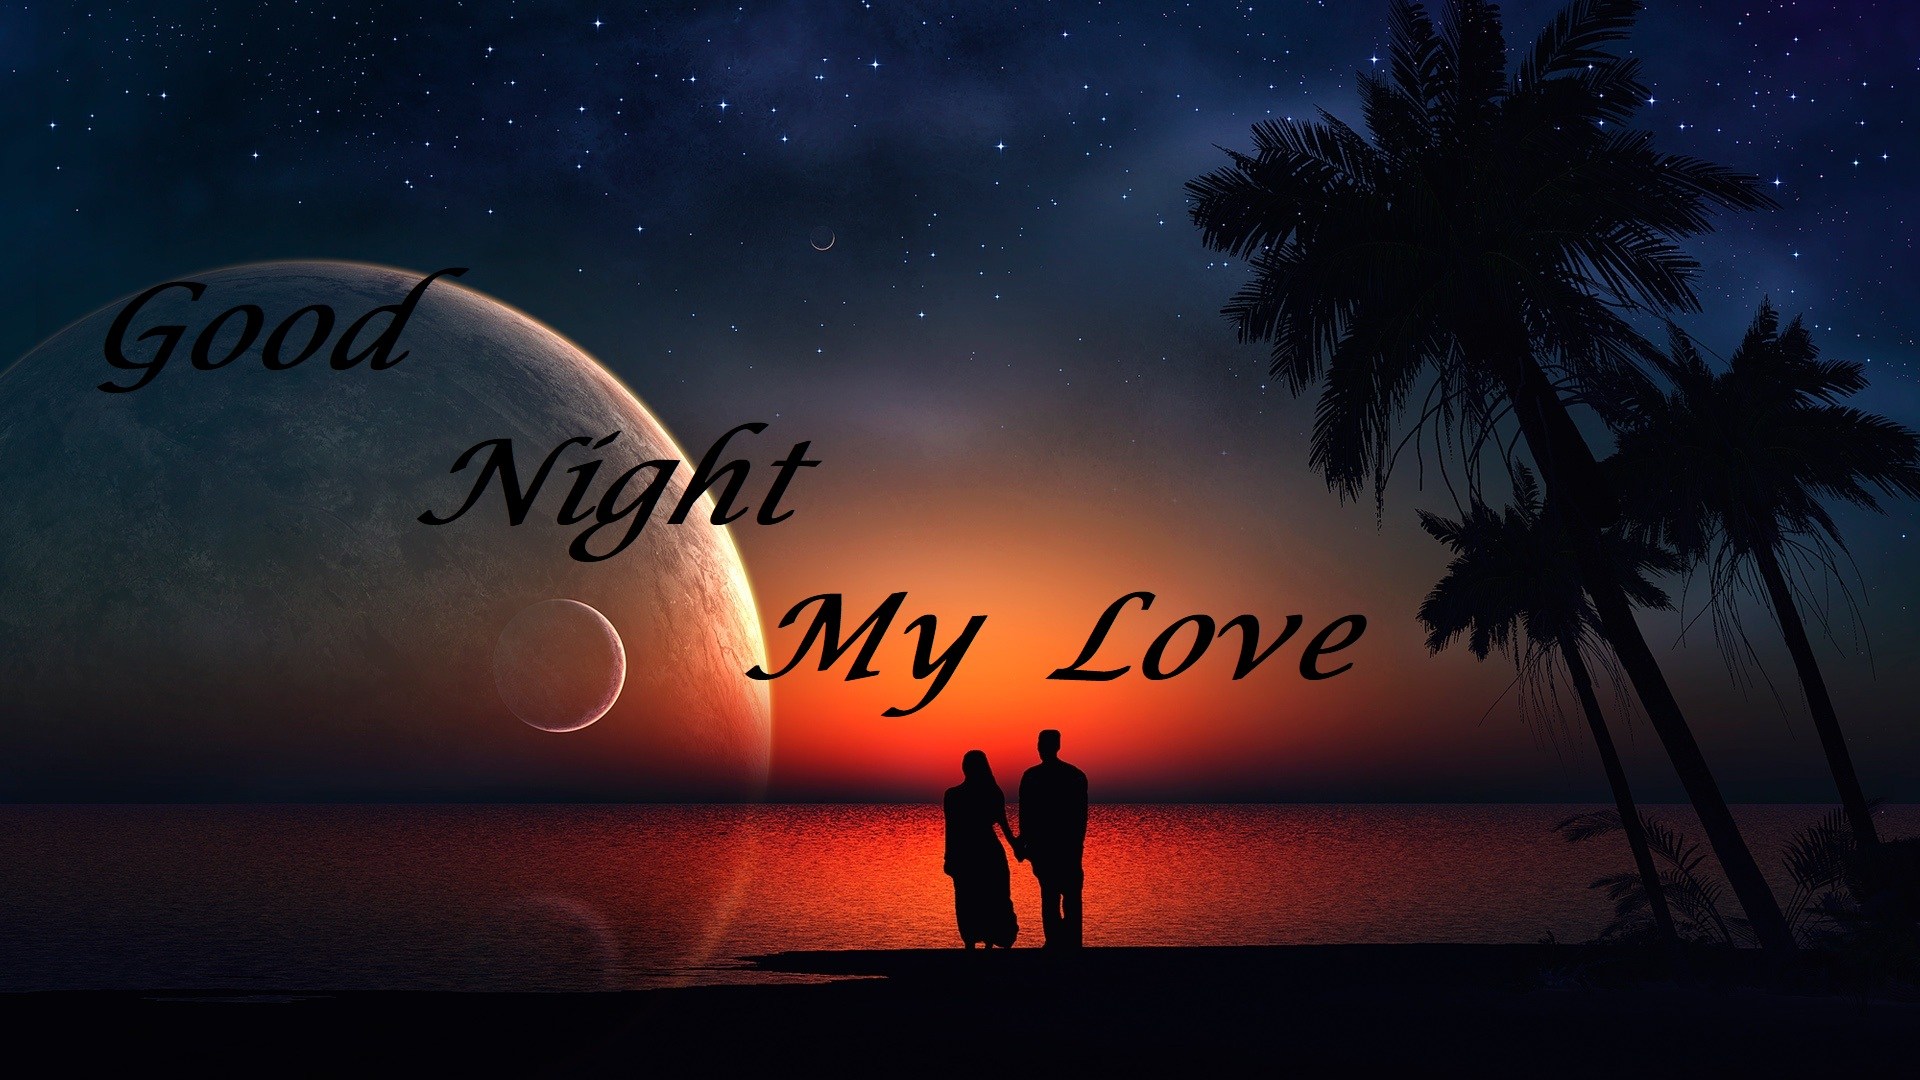 Best Good Night Wallpaper - Good Night My Love Free - 1920x1080 Wallpaper -  